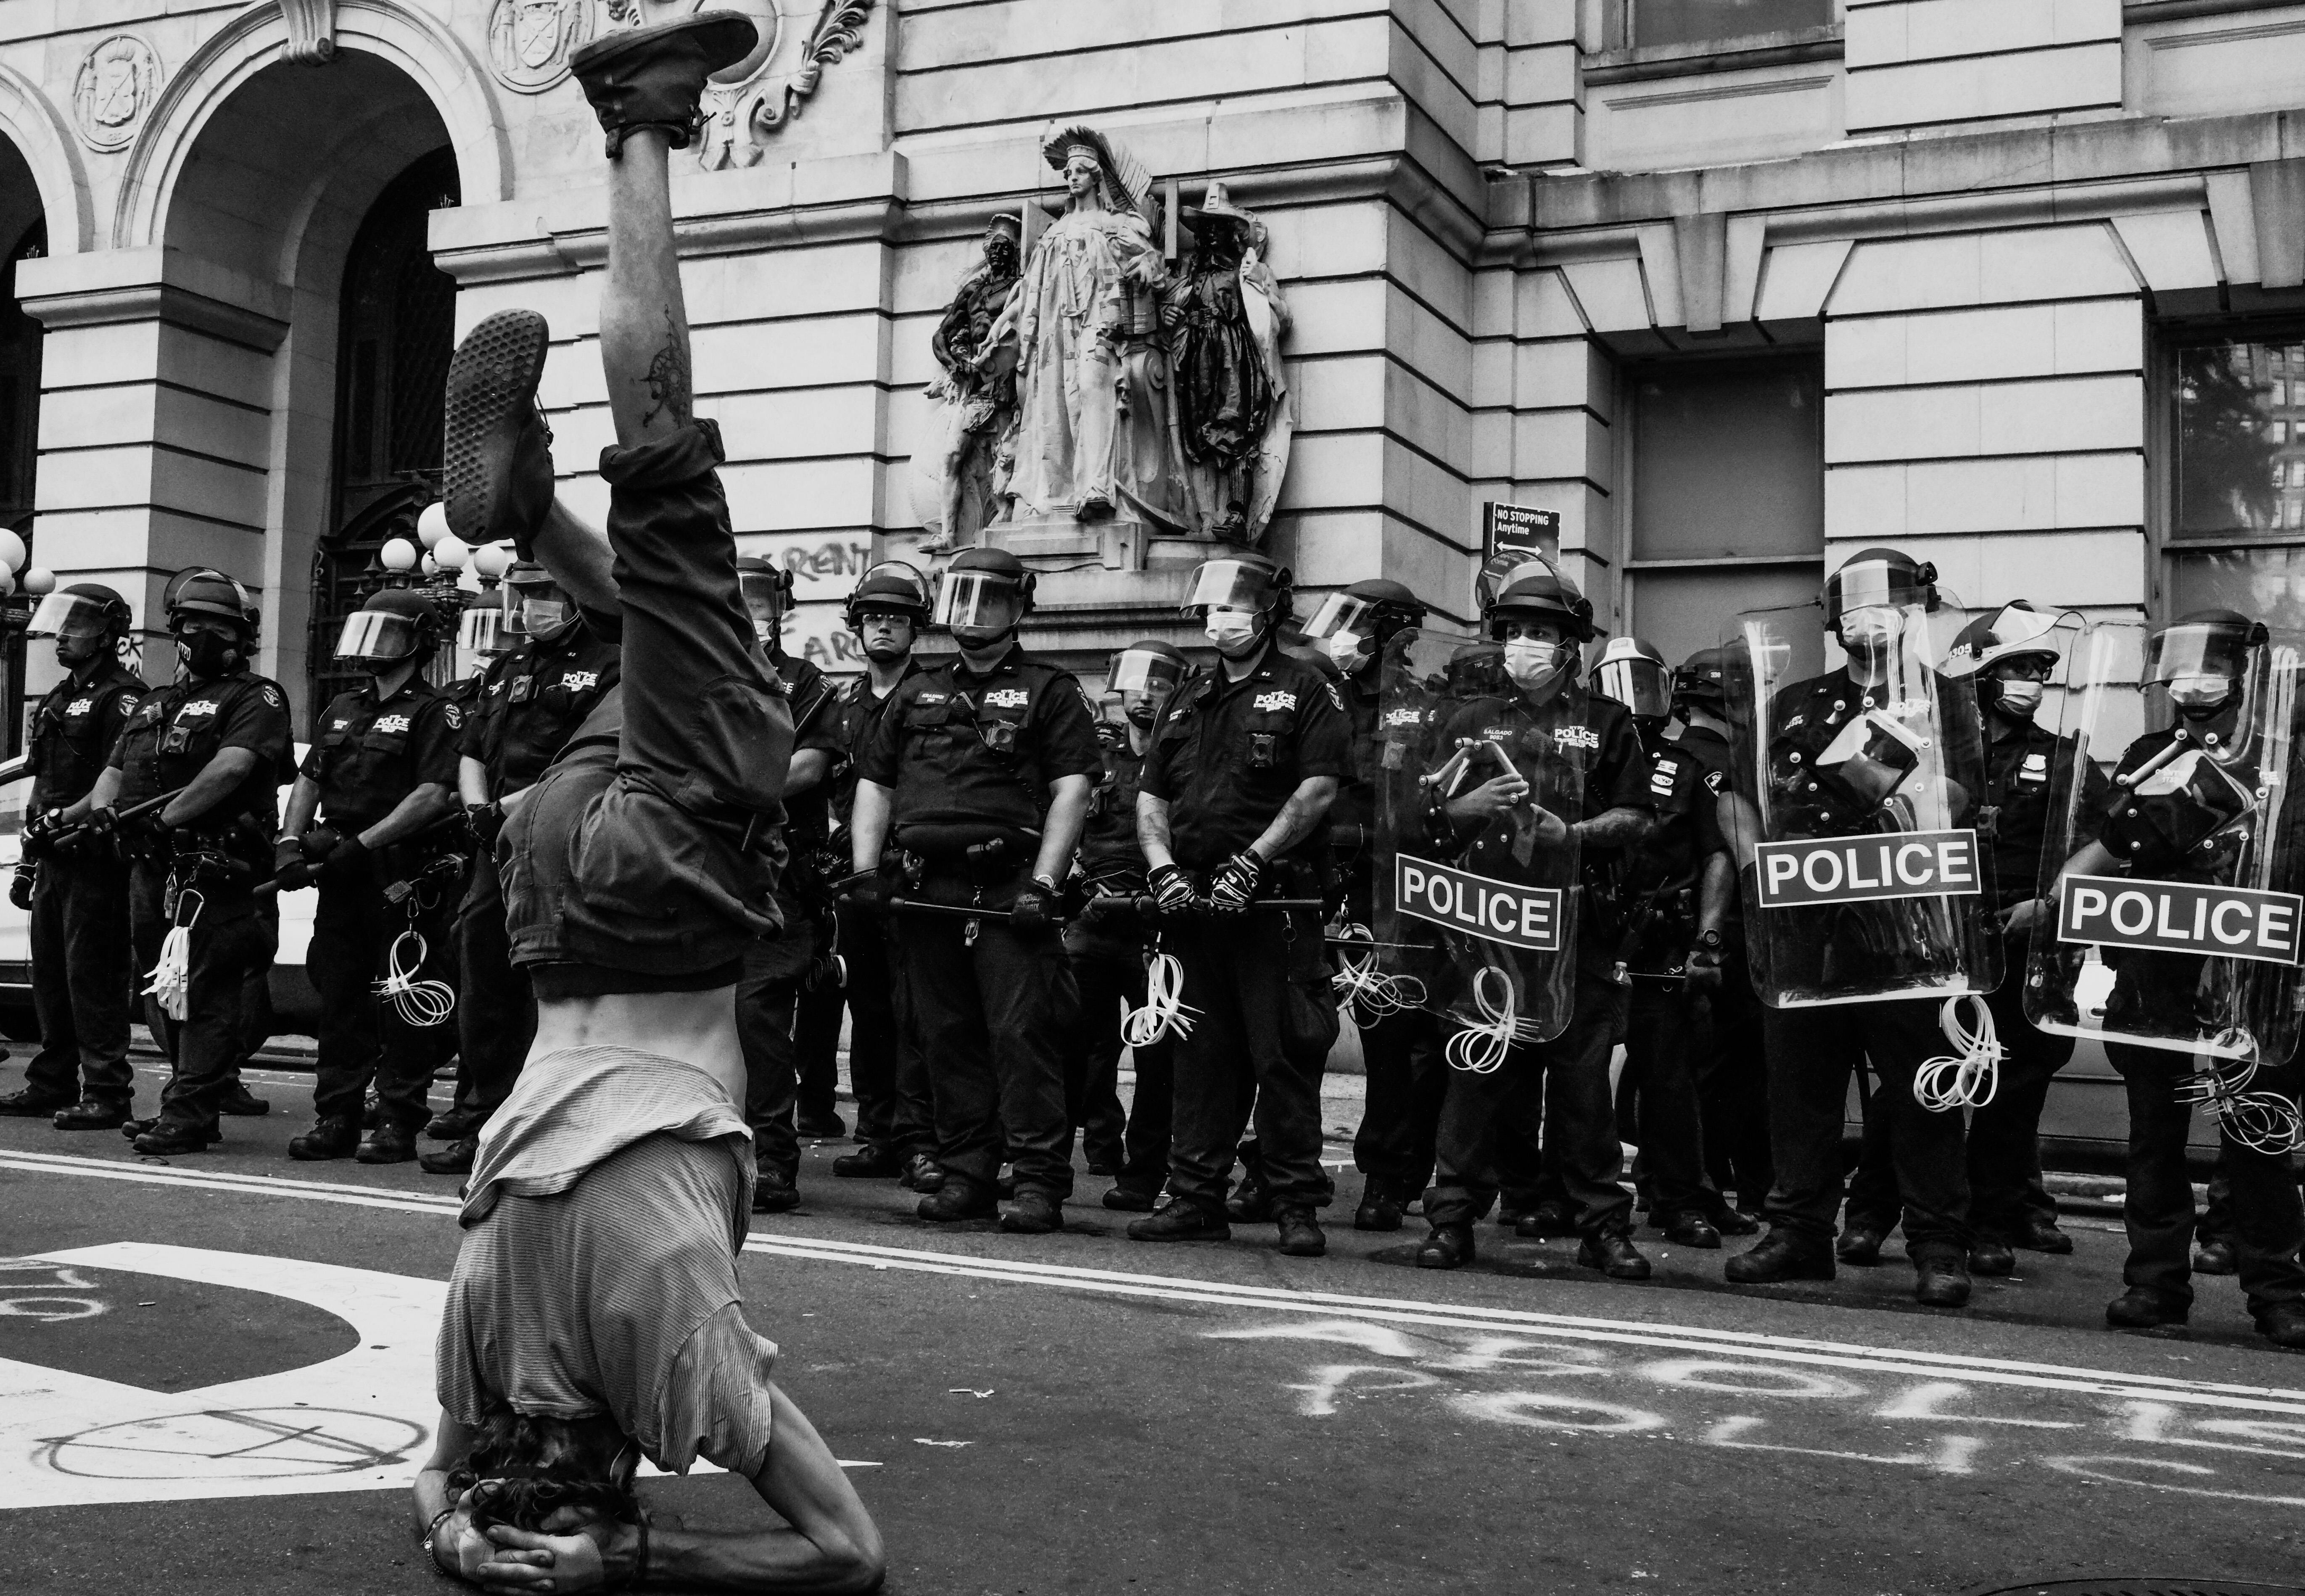 Финалист в категории Американский опыт, 2021. Стойка на руках. Демонстрант Black Lives Matter перед шеренгой полицейских в Нью-Йорке. Автор Клэй Бенскин